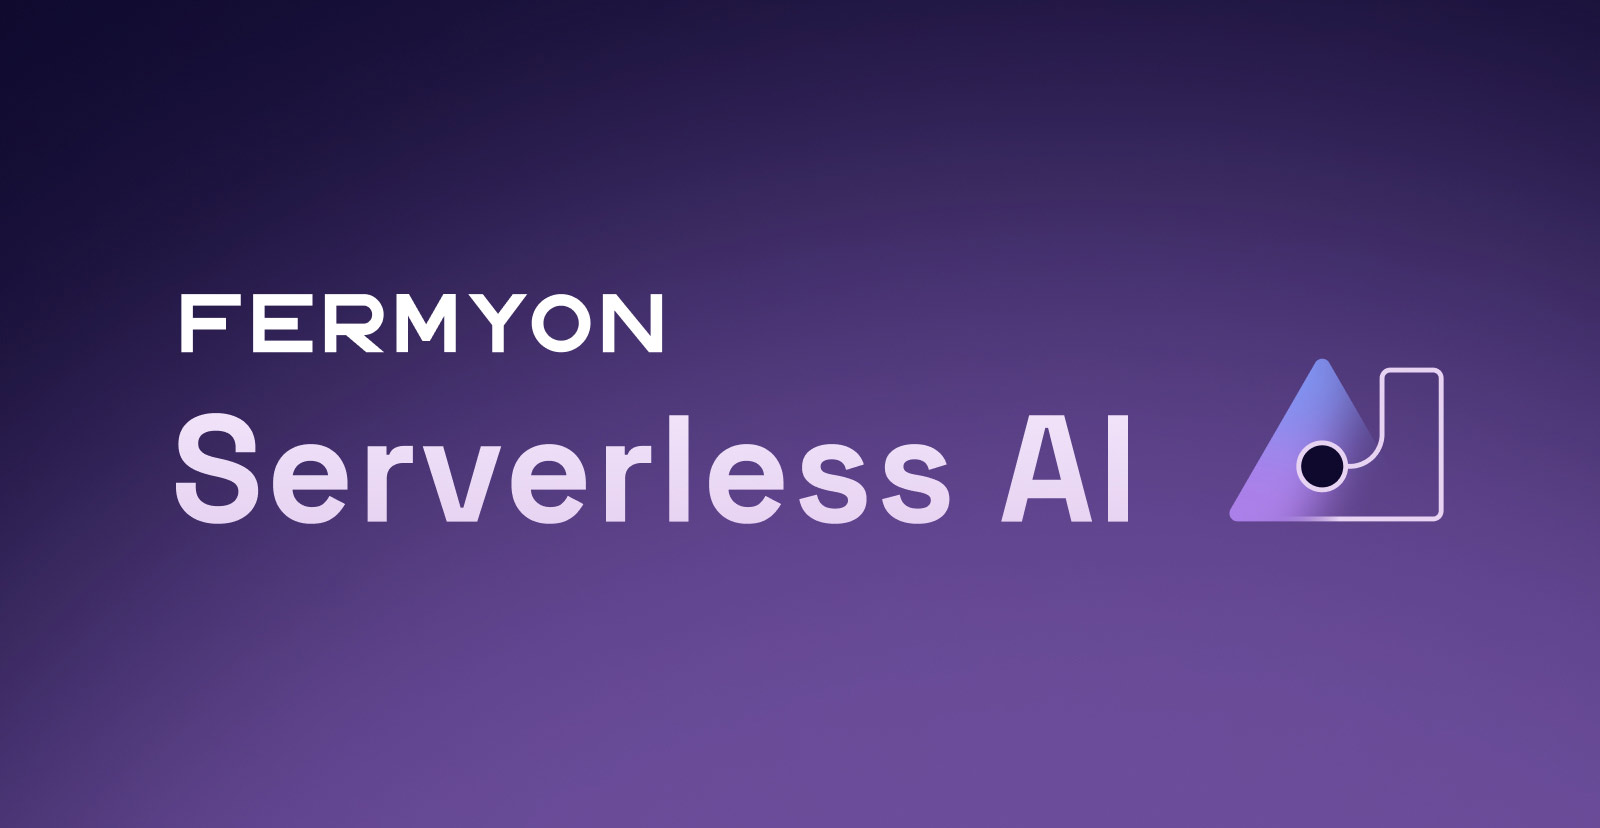 Fermyon Serverless AI